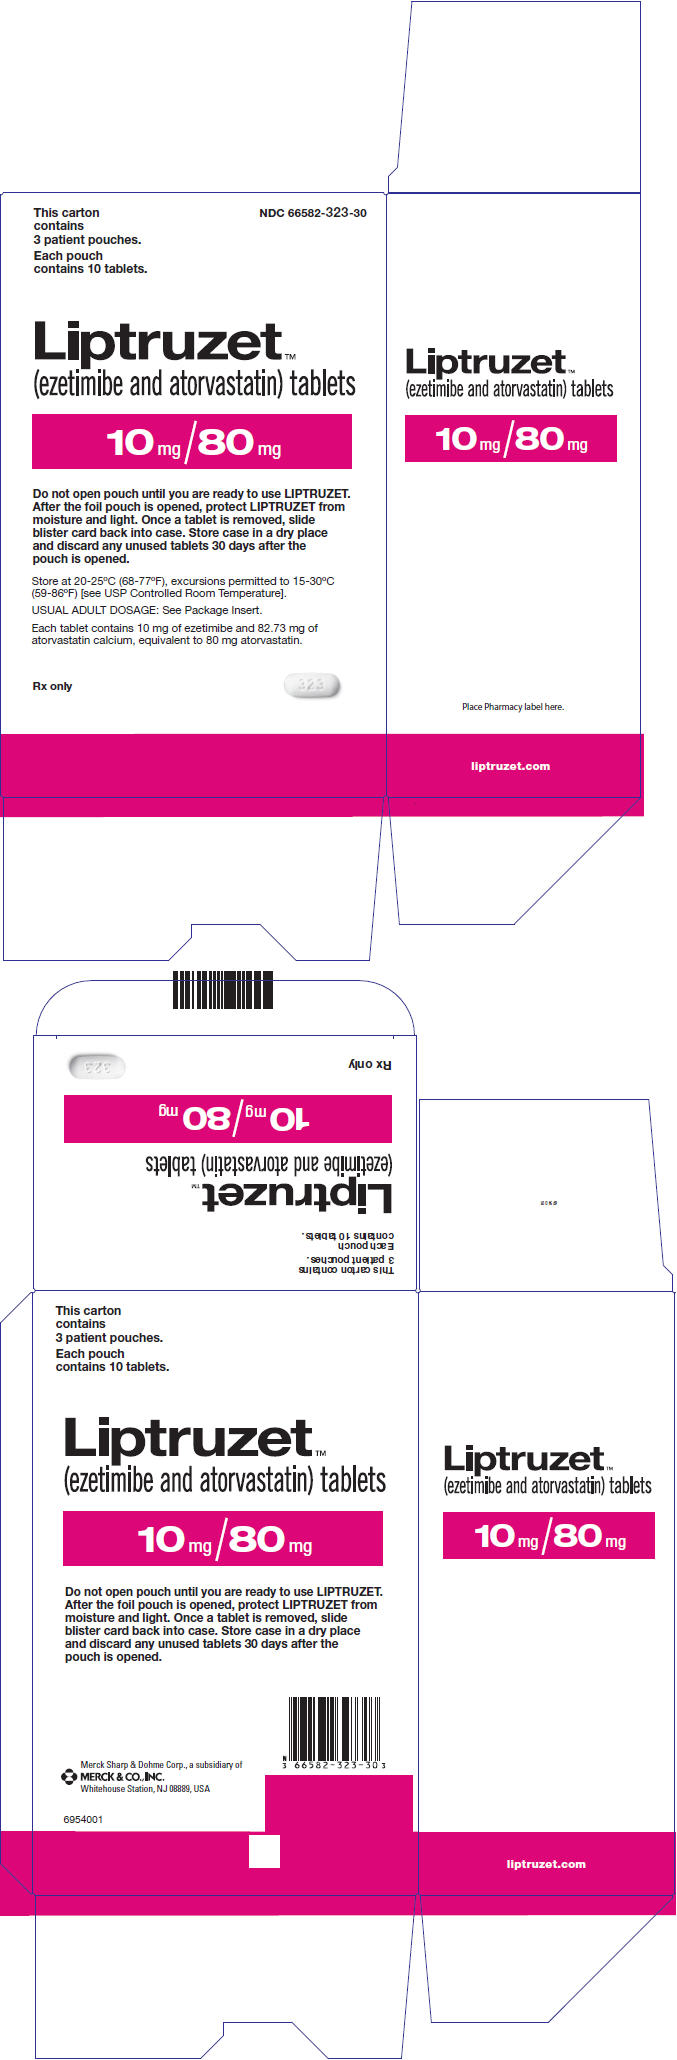 PRINCIPAL DISPLAY PANEL - 10 mg/80 mg Tablet Carton